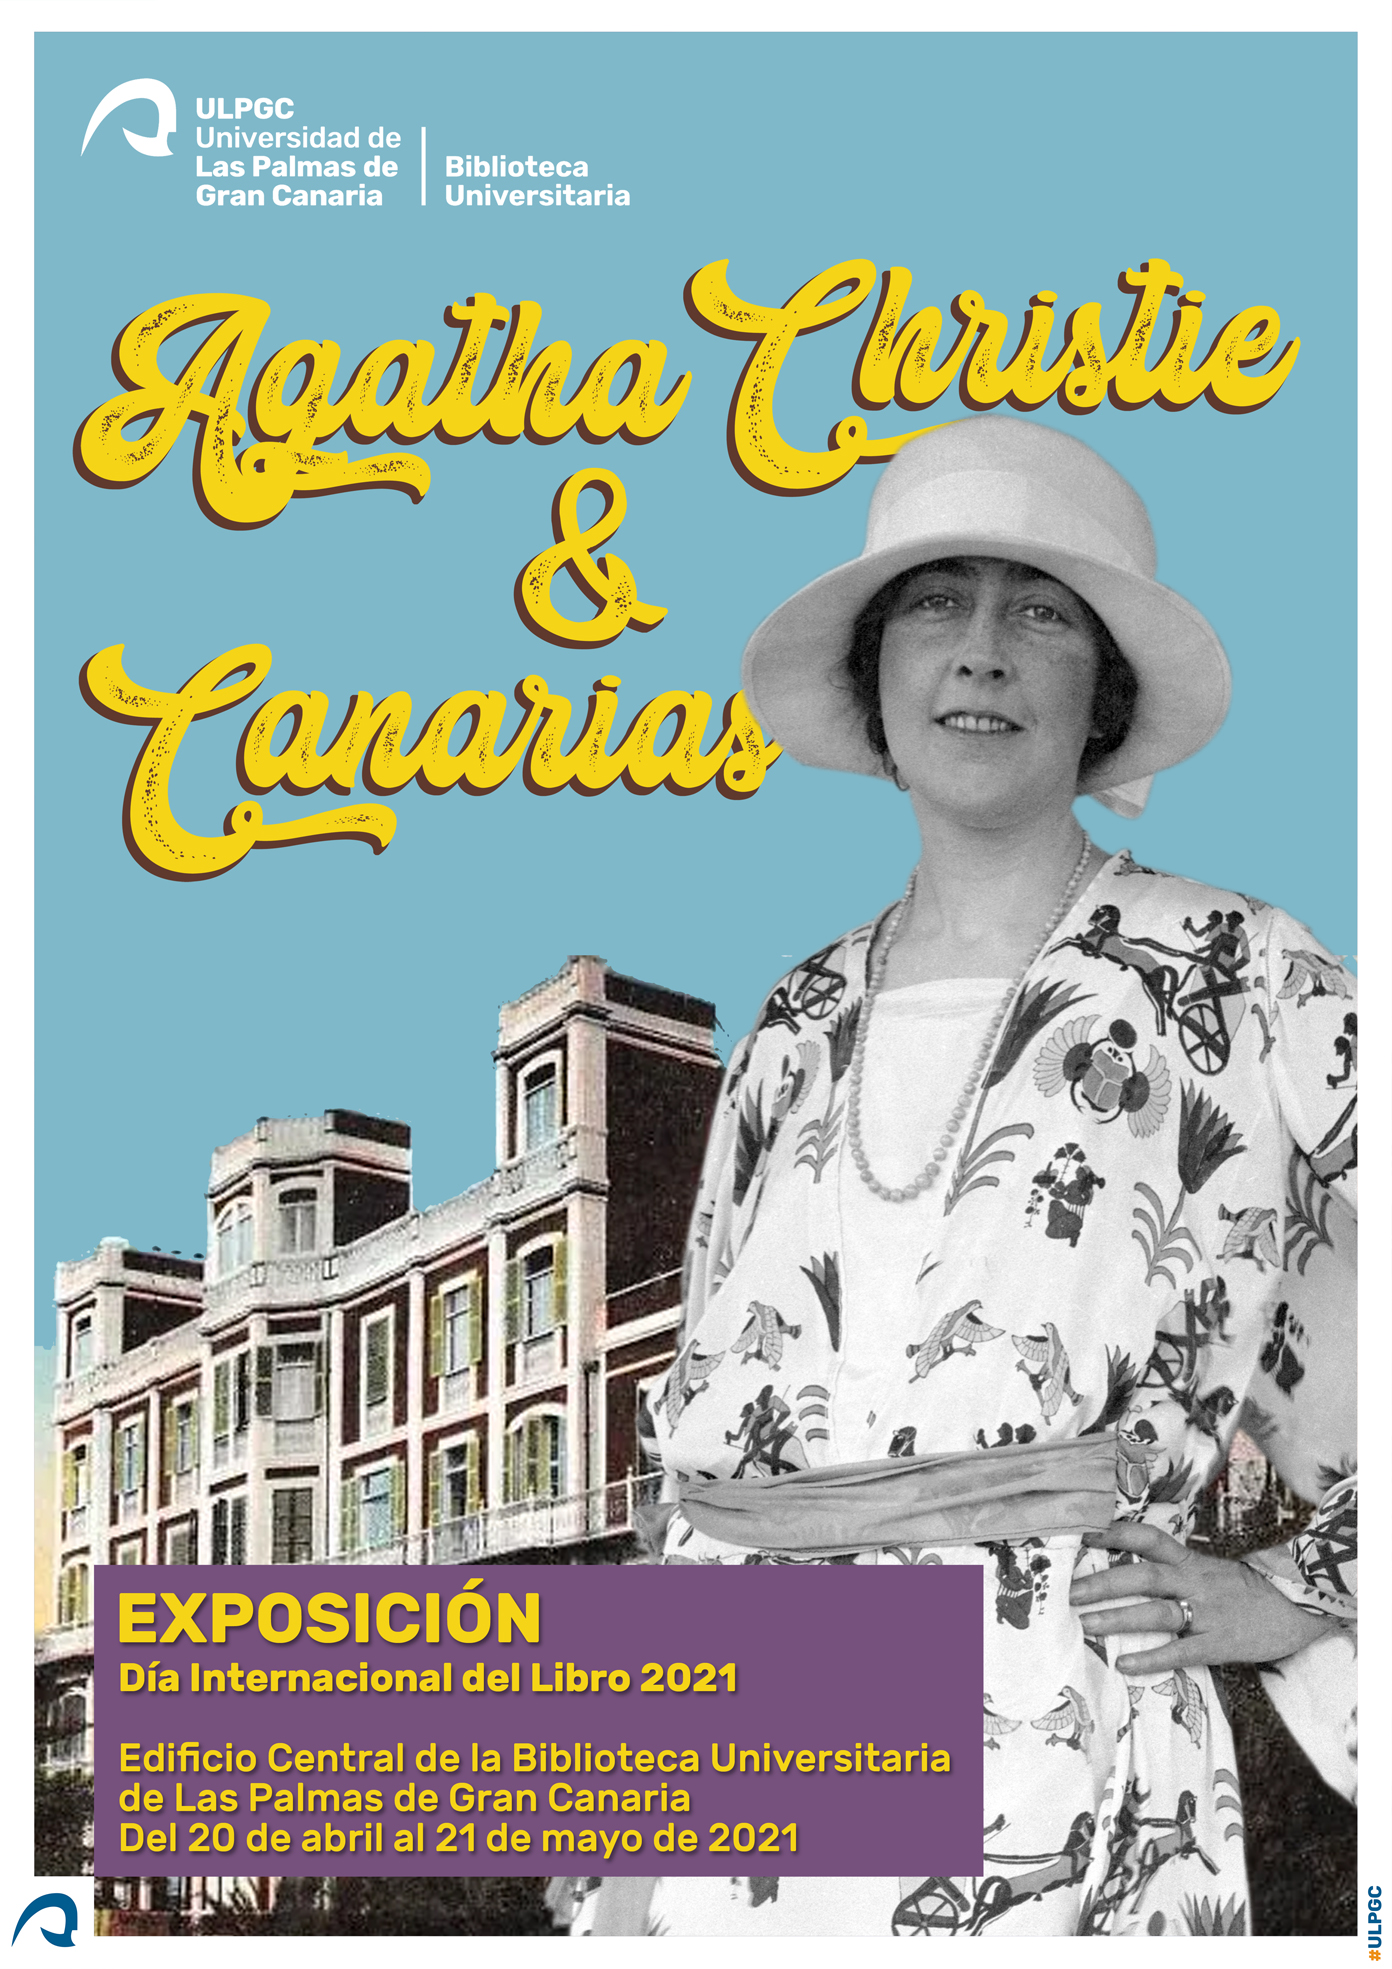 Fotografía de Agatha Chistie de pie, con sombrero y traje de verano, con una mano en la cintura, posando frente a un edificio (antiguo hotel de Las Palmas)